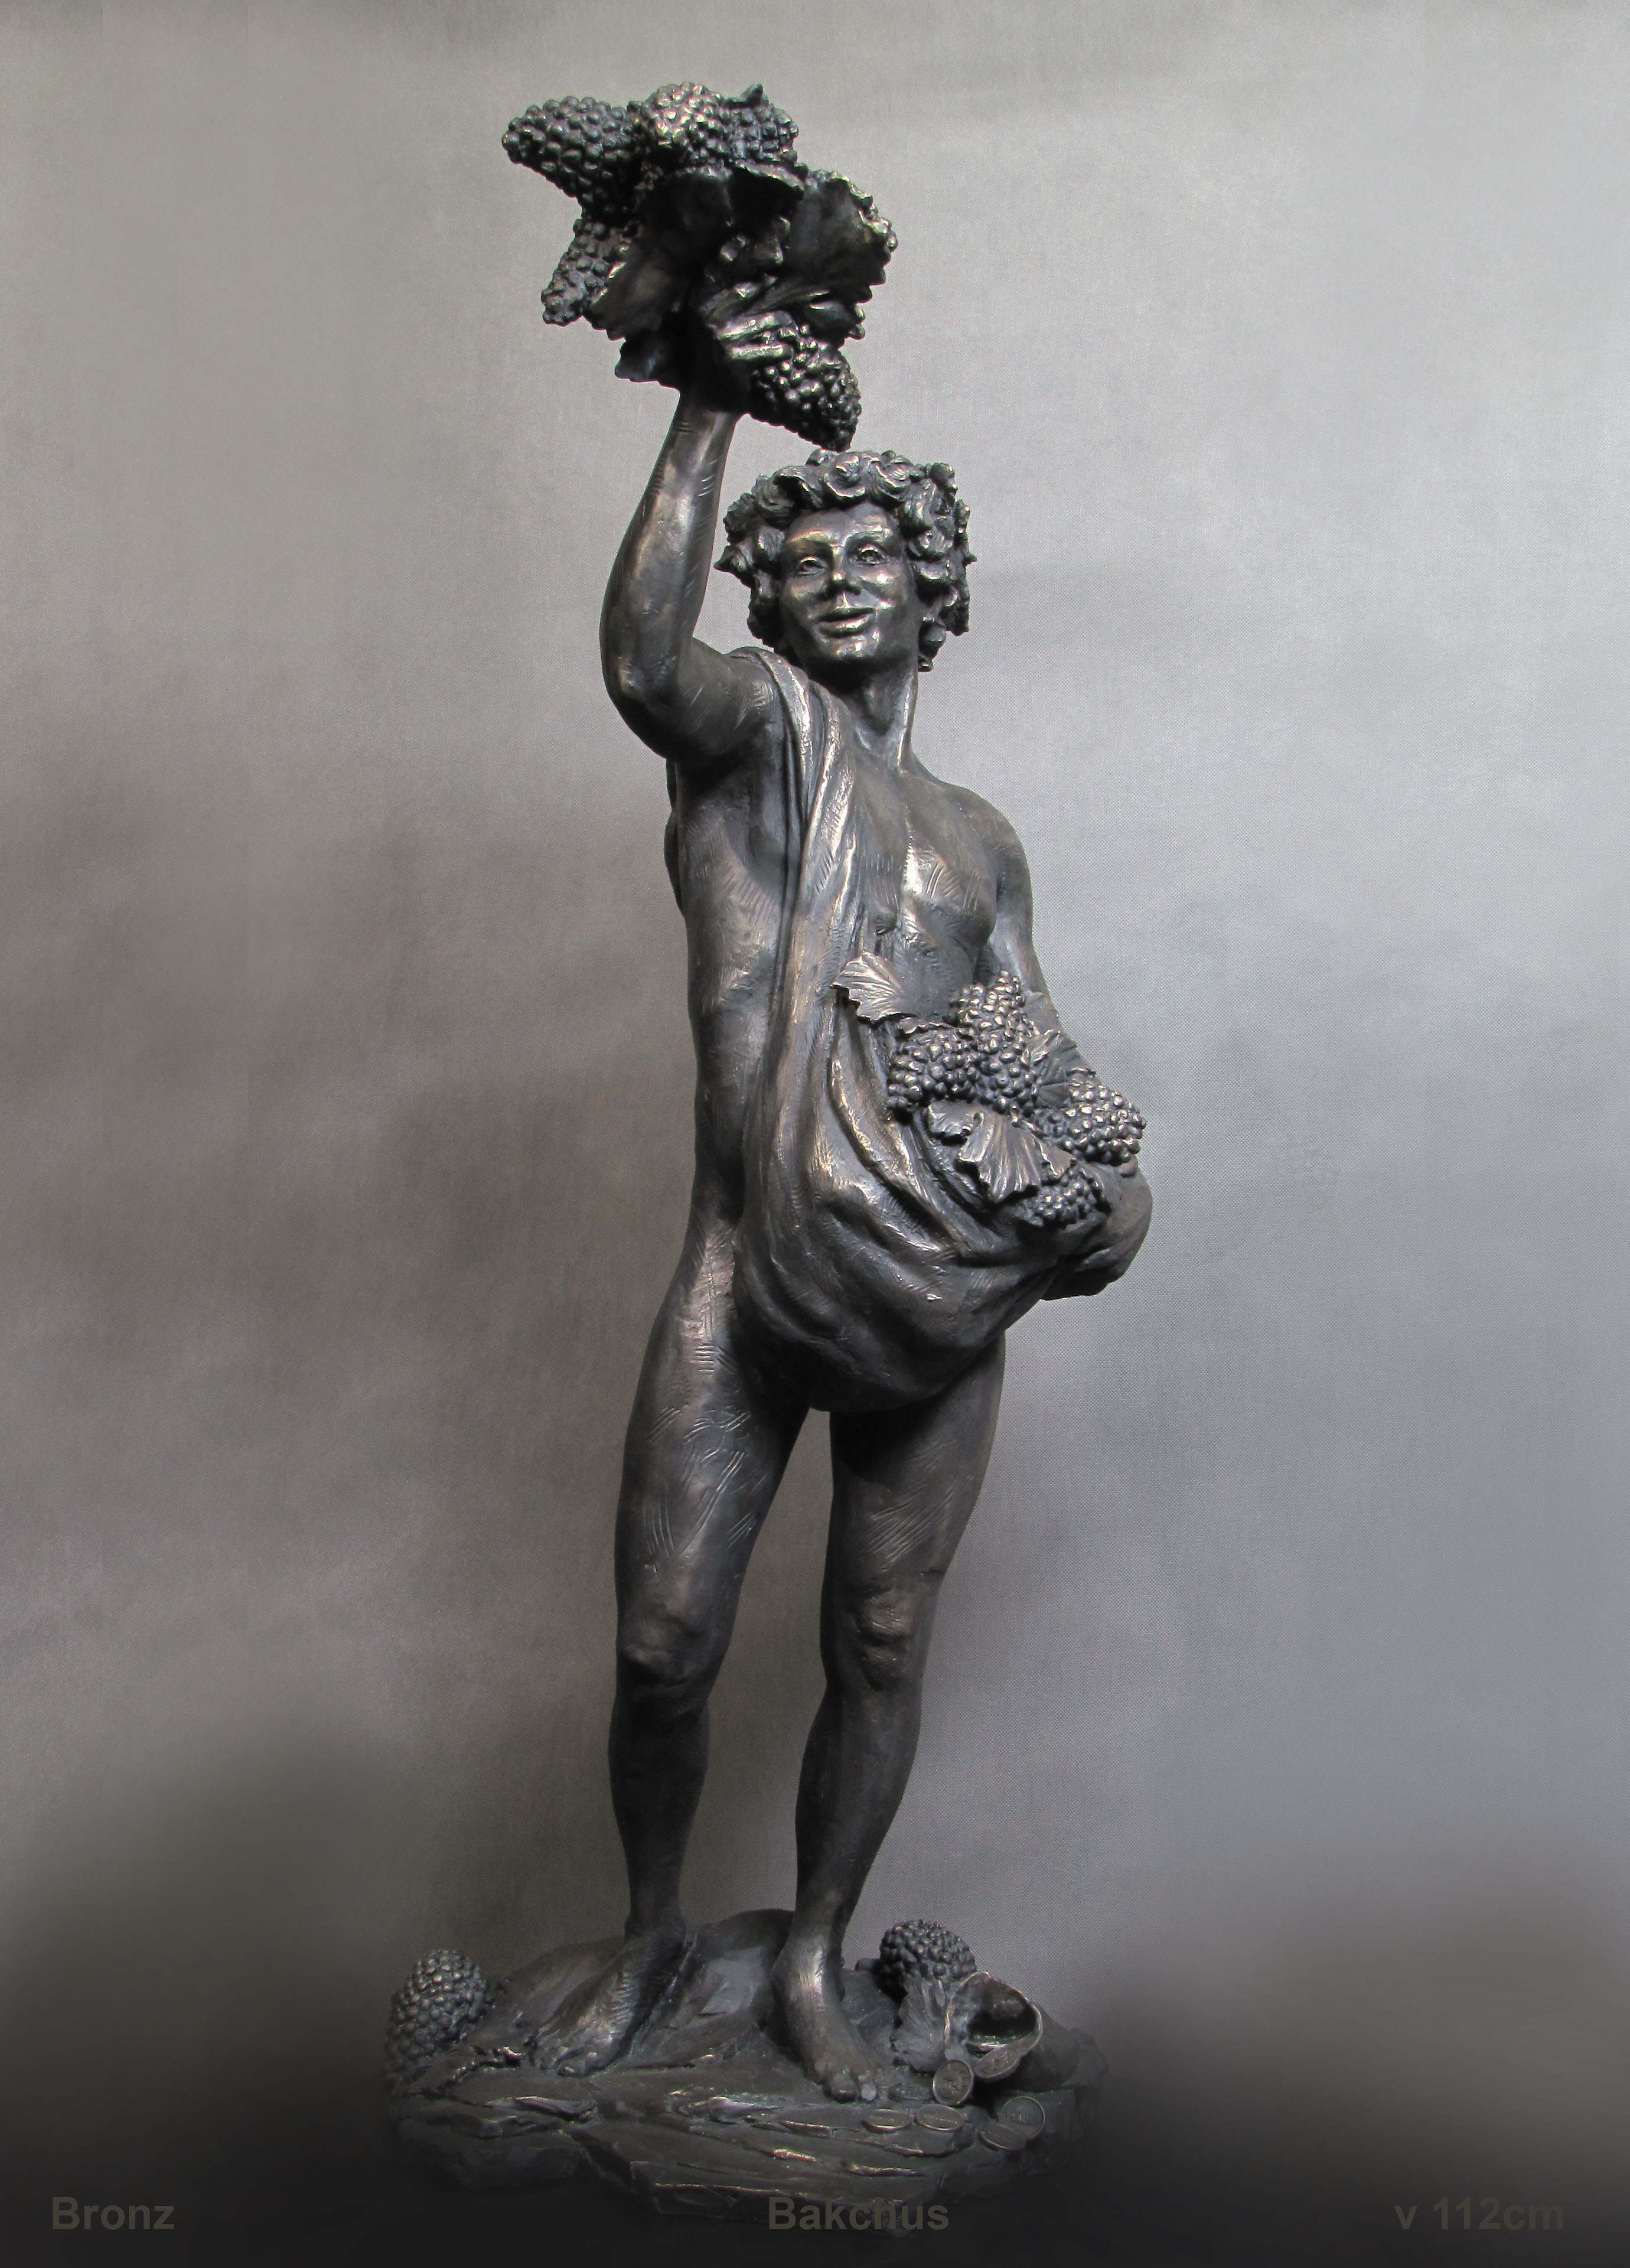 #bakchus,#bronzenfigure,#bronzstatue